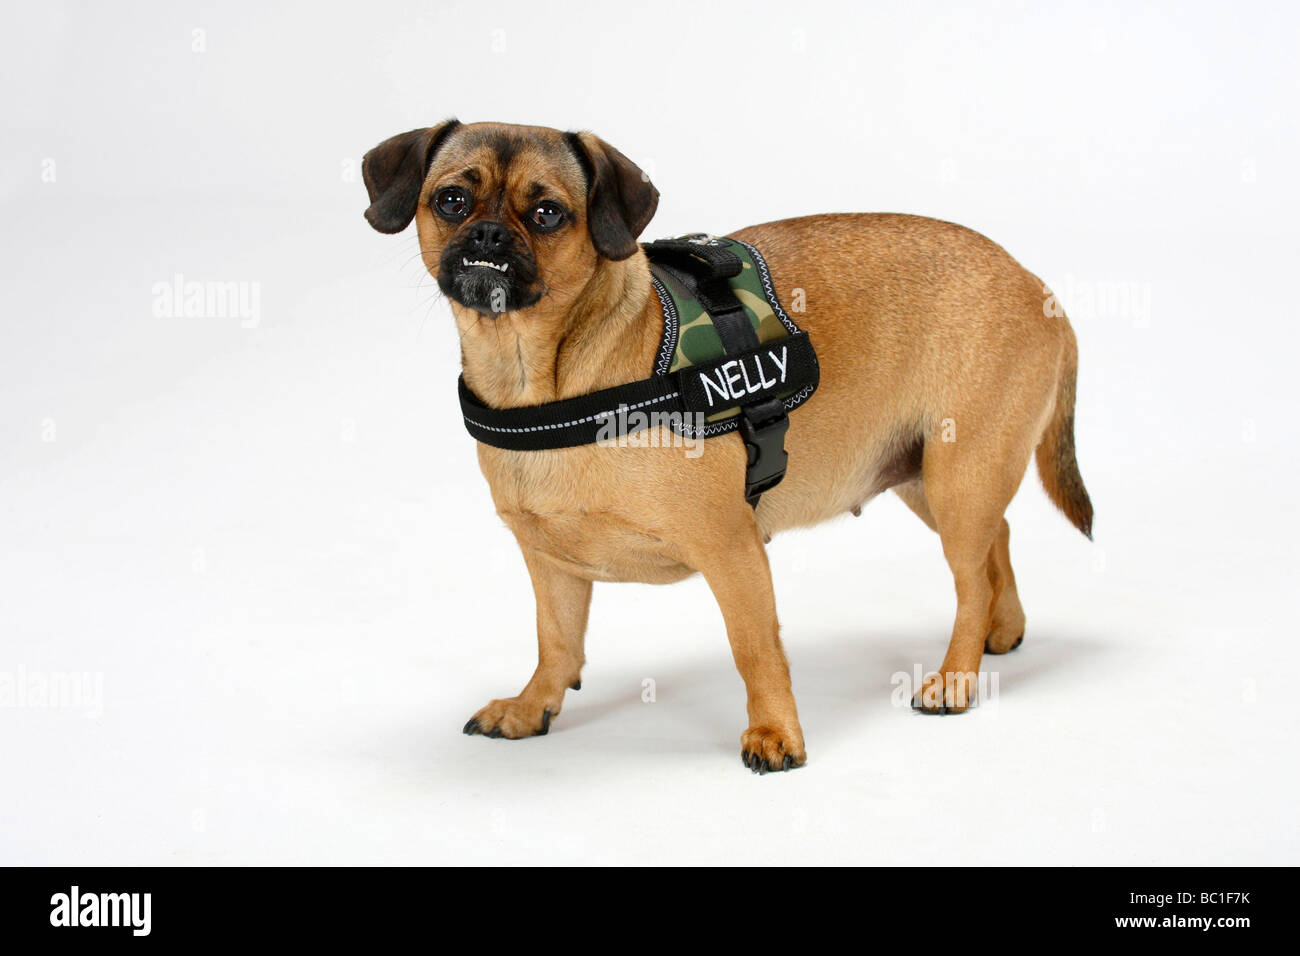 Gemischte Rasse Hund unterschritten reinrassiger Mops Dackel beißen Hündin  Gurt tragen Stockfotografie - Alamy